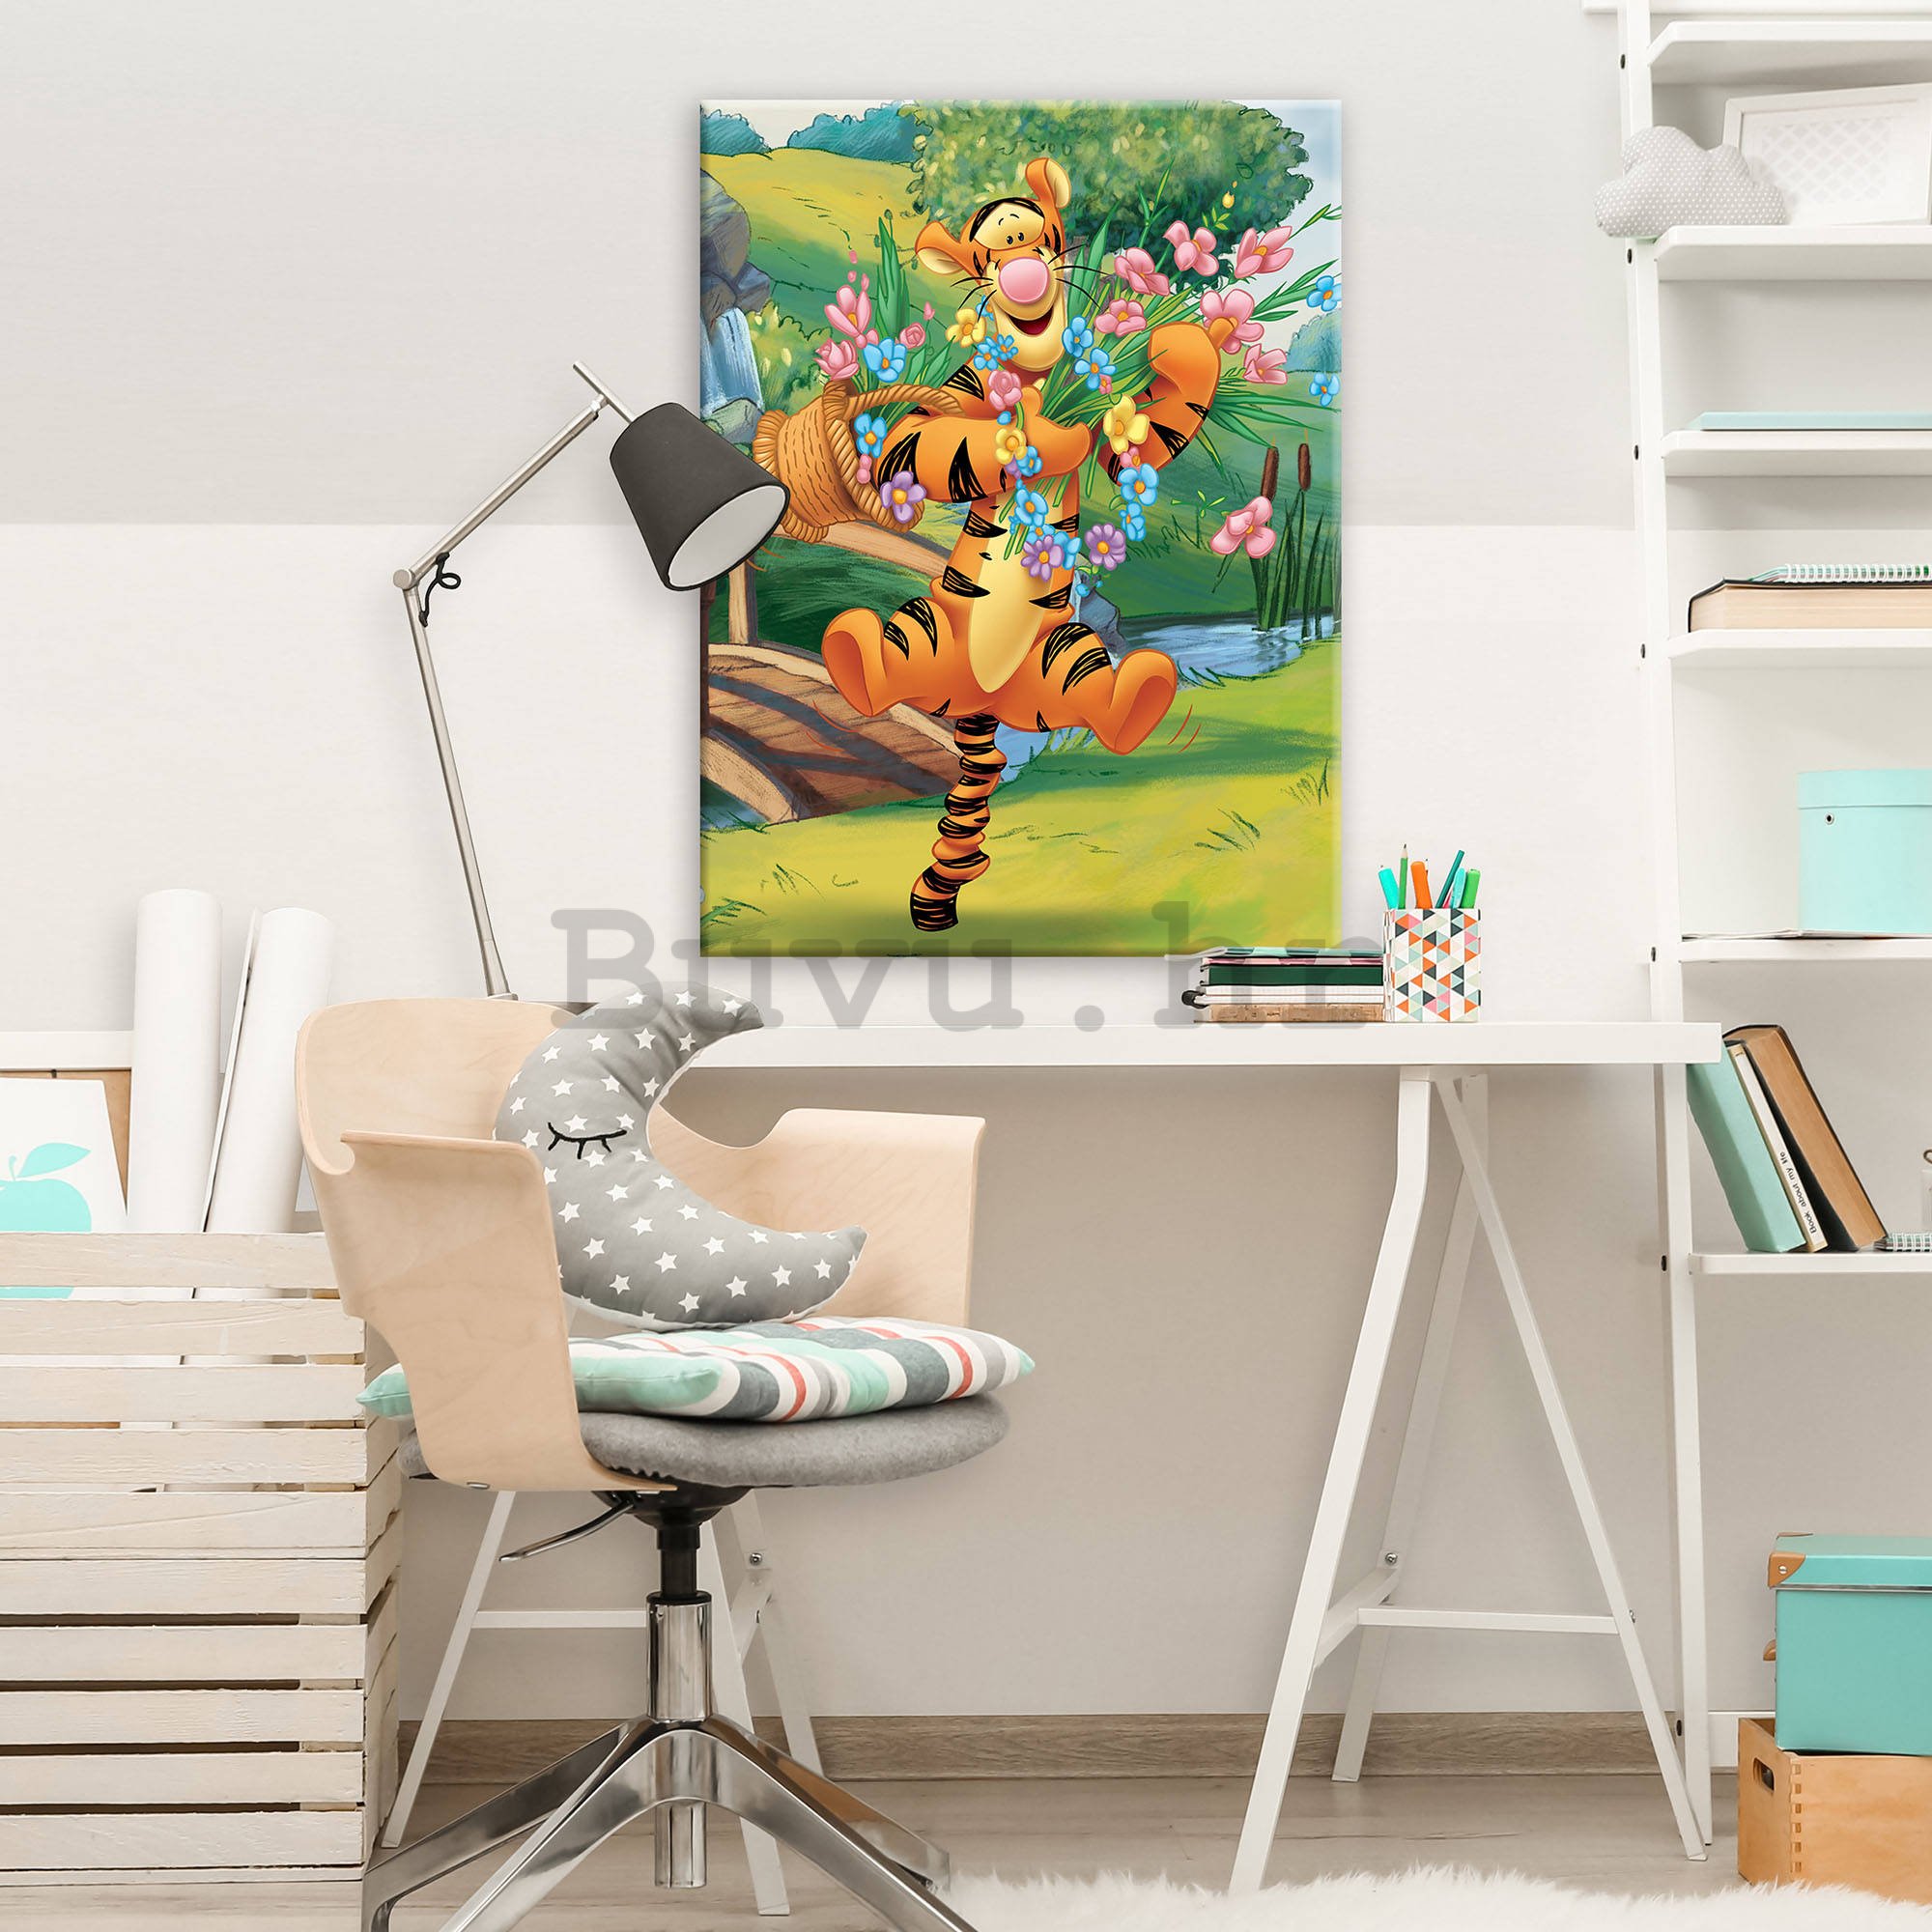 Slika na platnu: Medvjedić Pu (Tigar i cvijeće ) - 75x100 cm